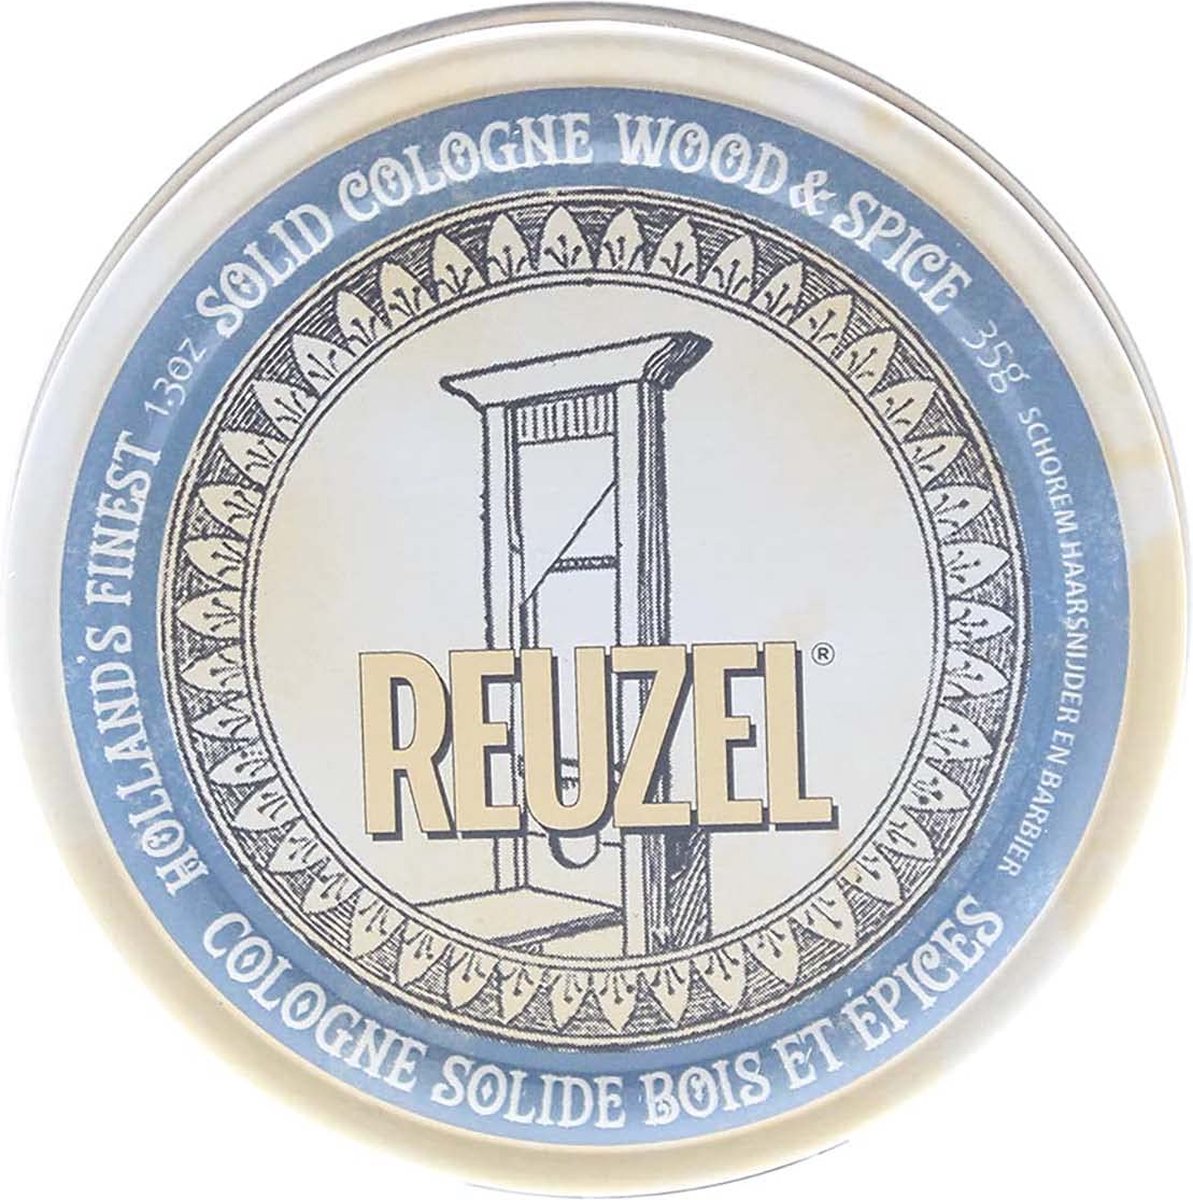 Reuzel - Solid Cologne Balm Wood & Spice - 35gr.